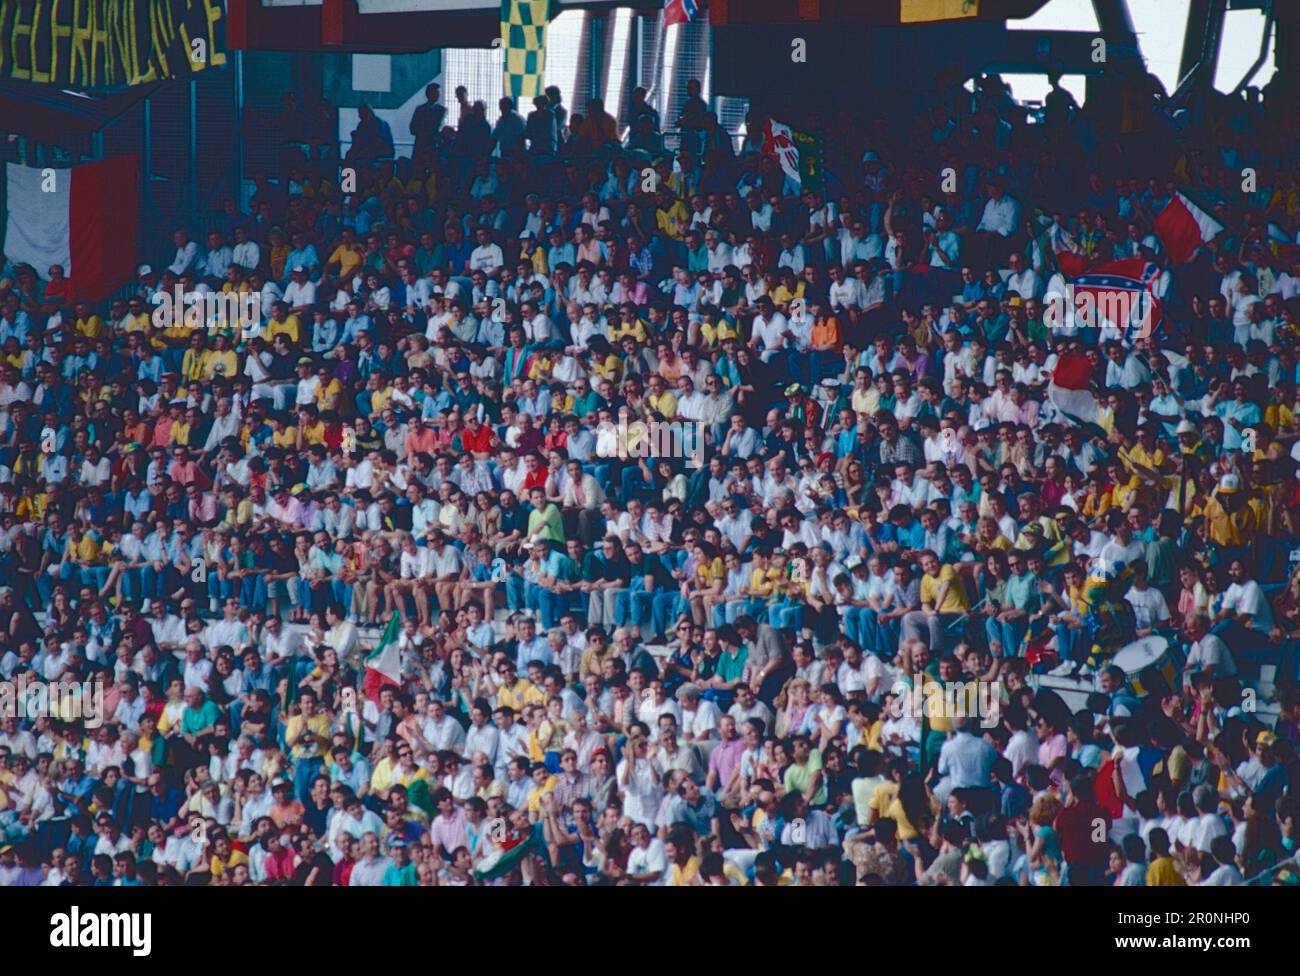 Die Fans, Costa Rica und die brasilianischen Nationalmannschaften spielen um die Weltmeisterschaft, das Delle Alpi Stadium, Turin, Italien 1990 Stockfoto